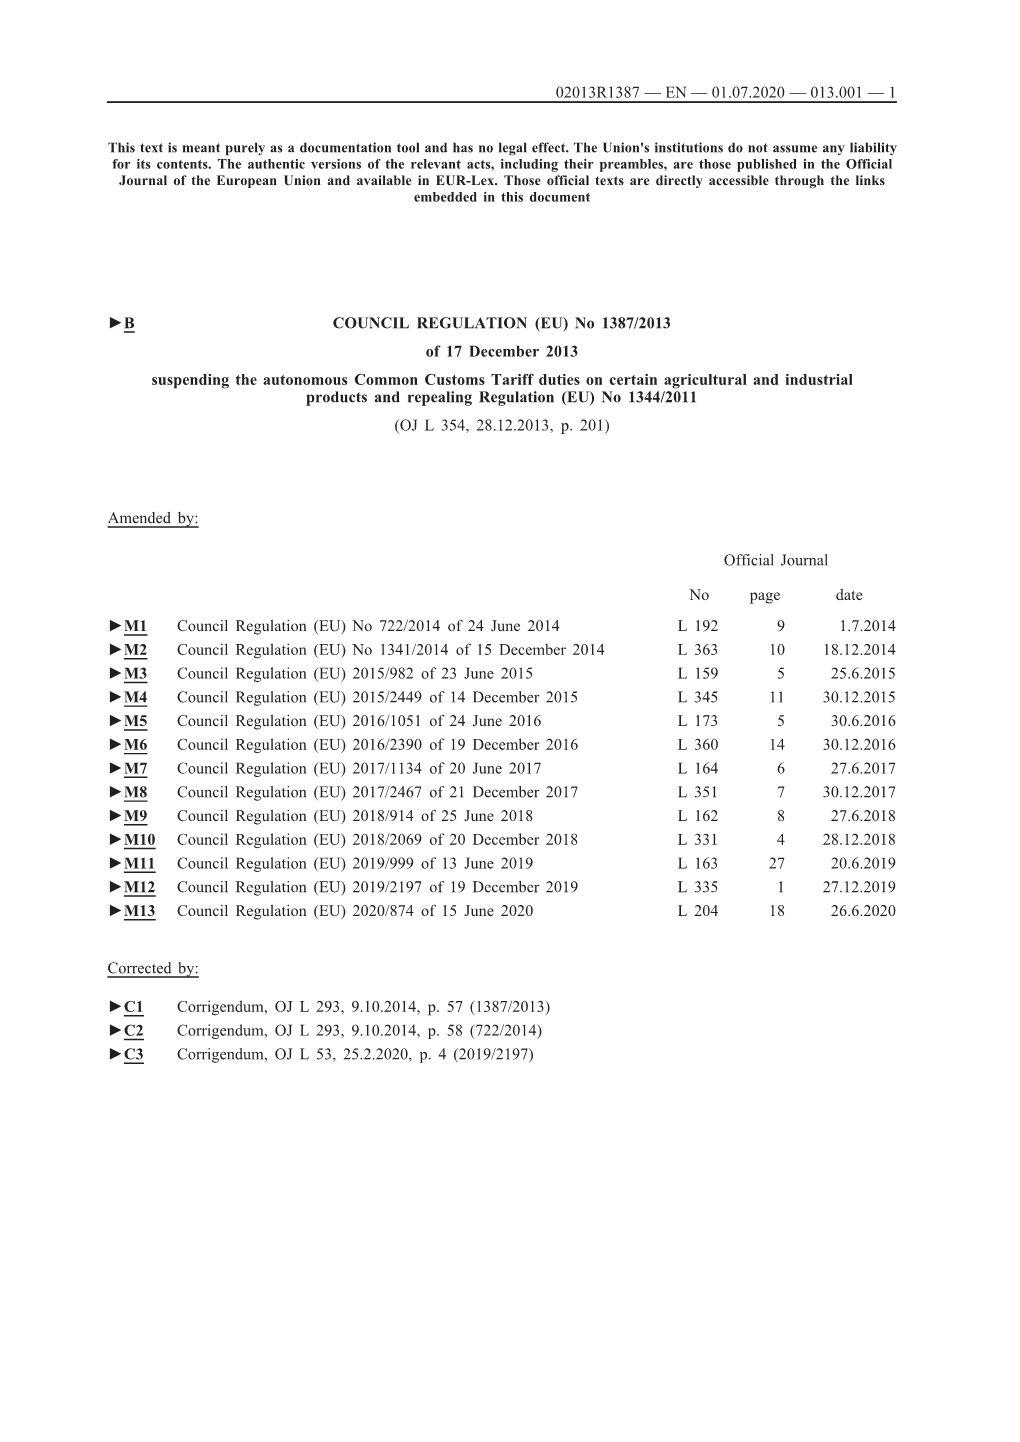 B COUNCIL REGULATION (EU) No 1387/2013 of 17